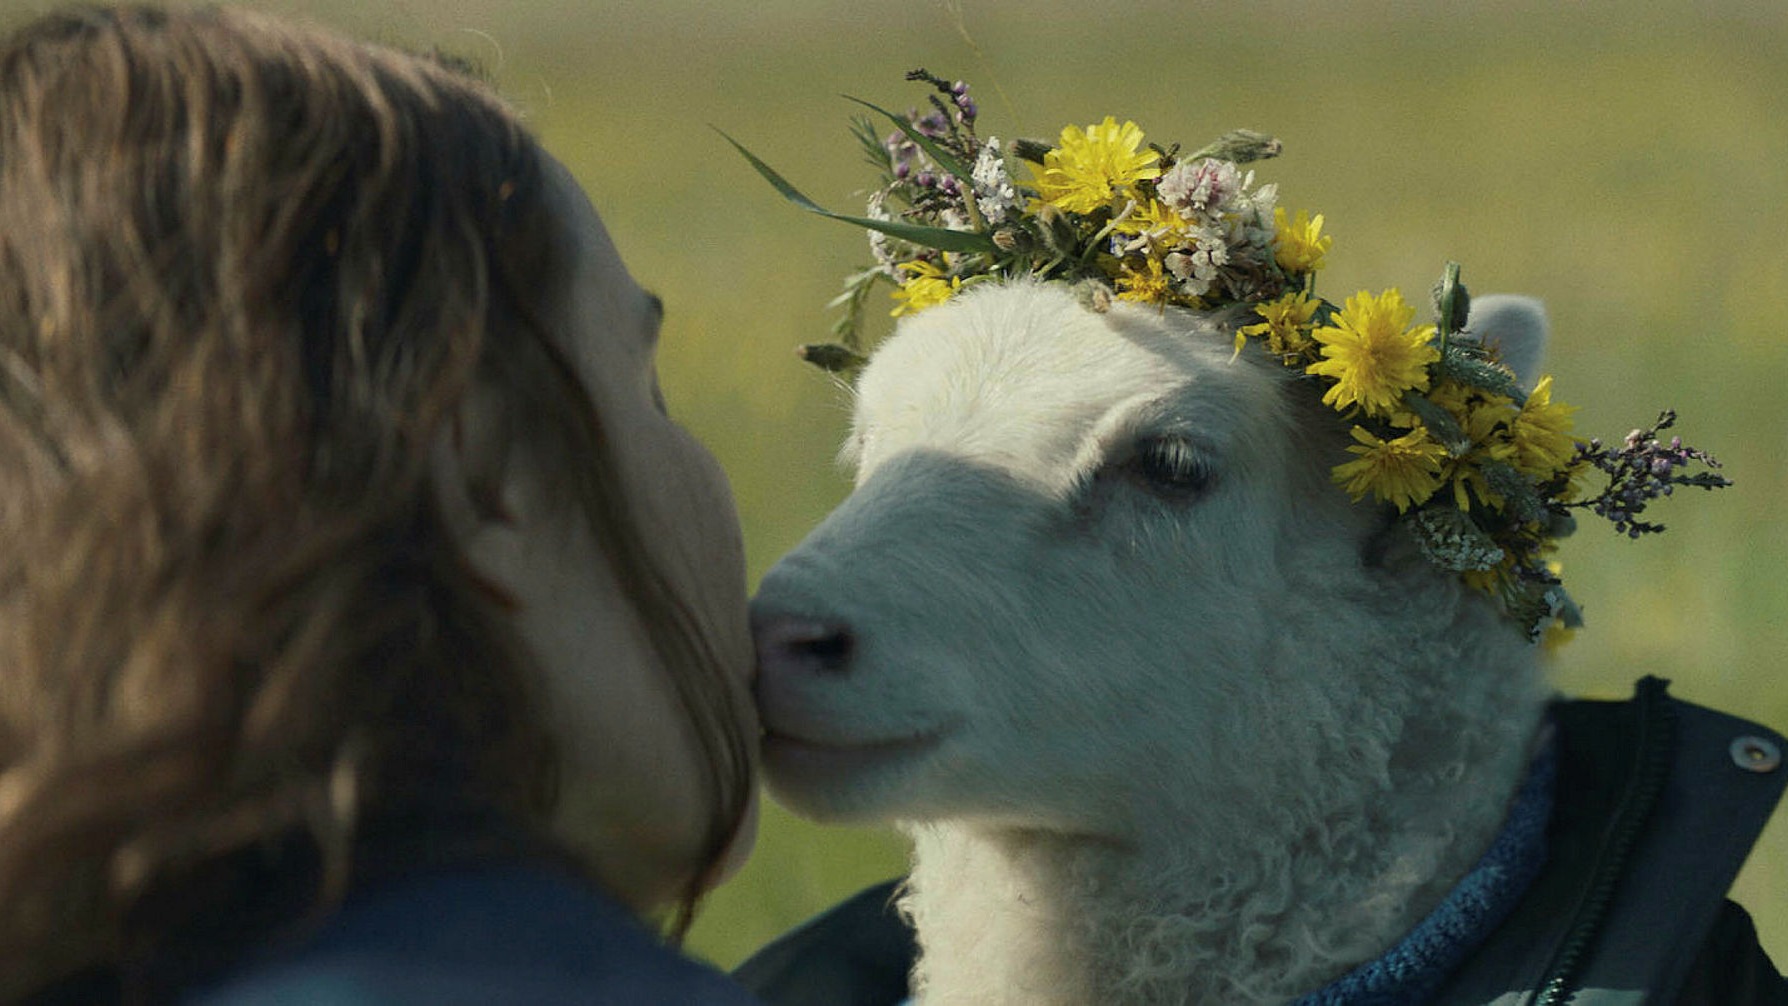 Filme islandês com Noomi Rapace - que estreia no streaming MUBI - gira em torno de cordeiro antropomórfico fofo e grotesco na mesma medida